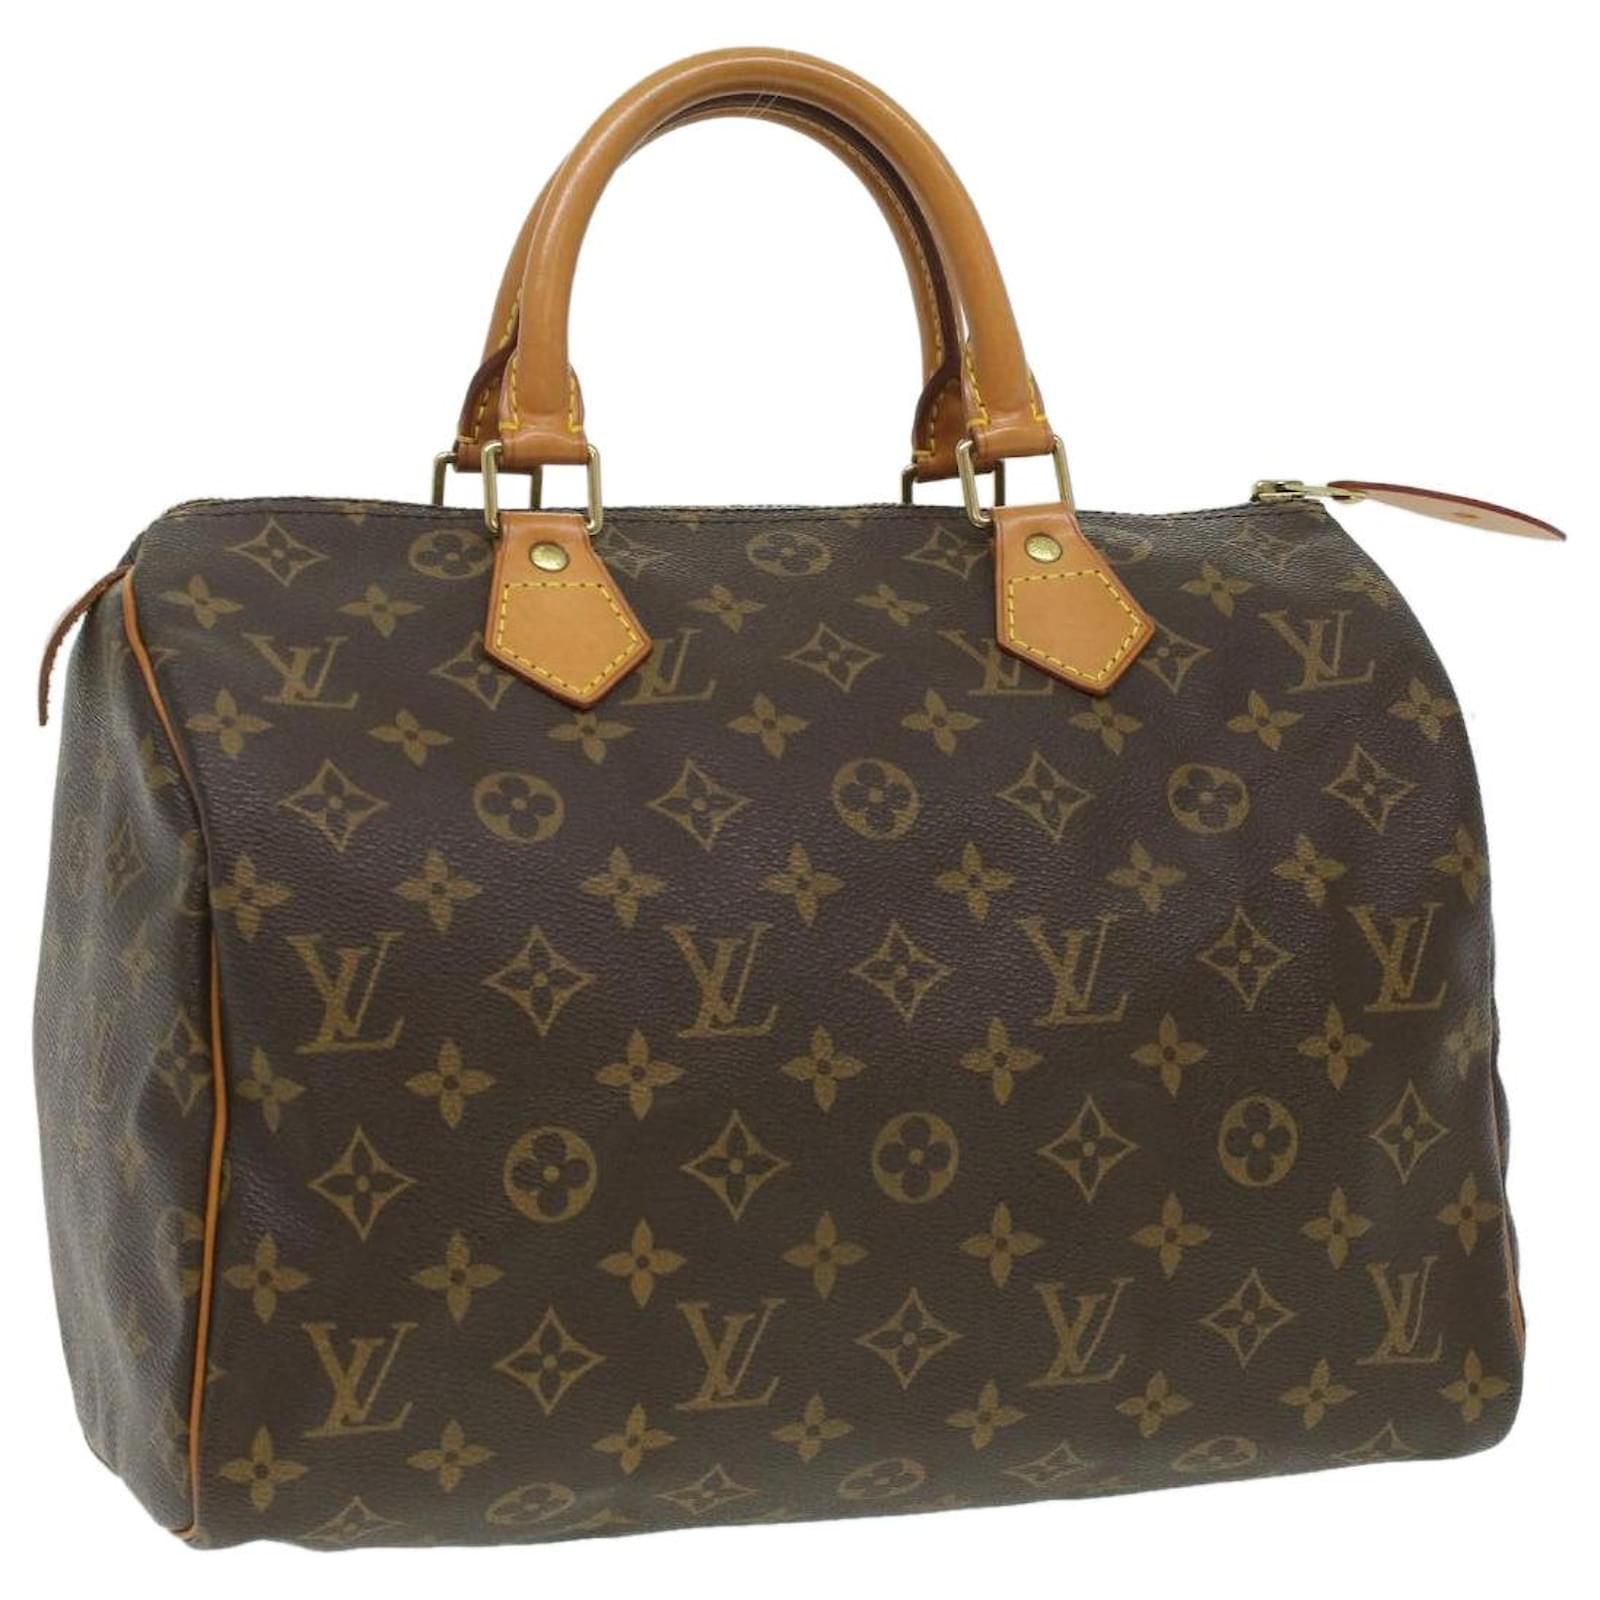 Louis Vuitton Monogram Speedy 30 Handbag M41526 Lv